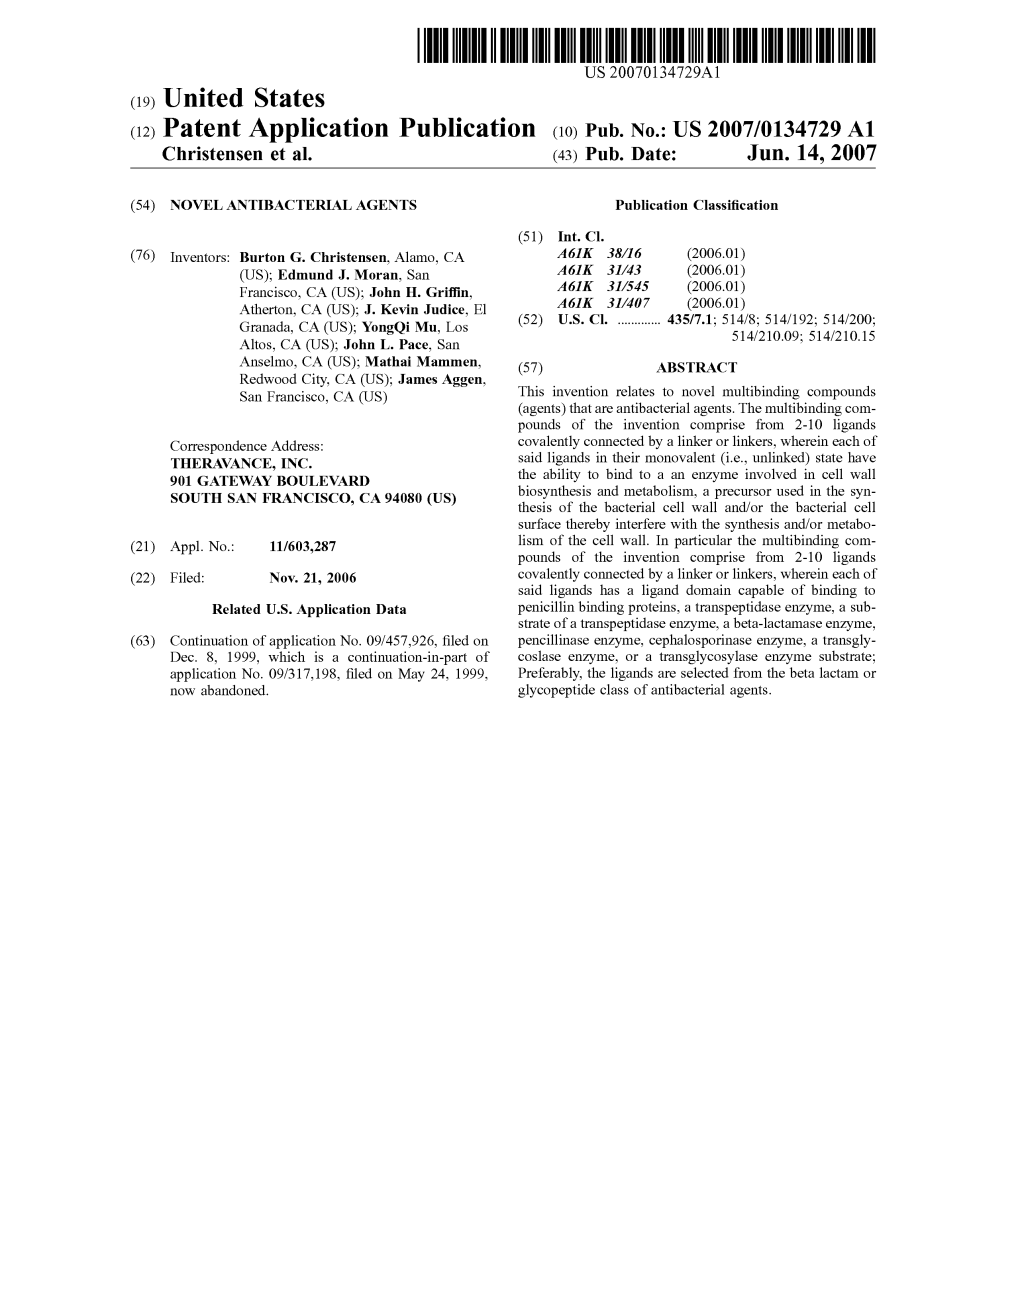 (12) Patent Application Publication (10) Pub. No.: US 2007/0134729 A1 Christensen Et Al